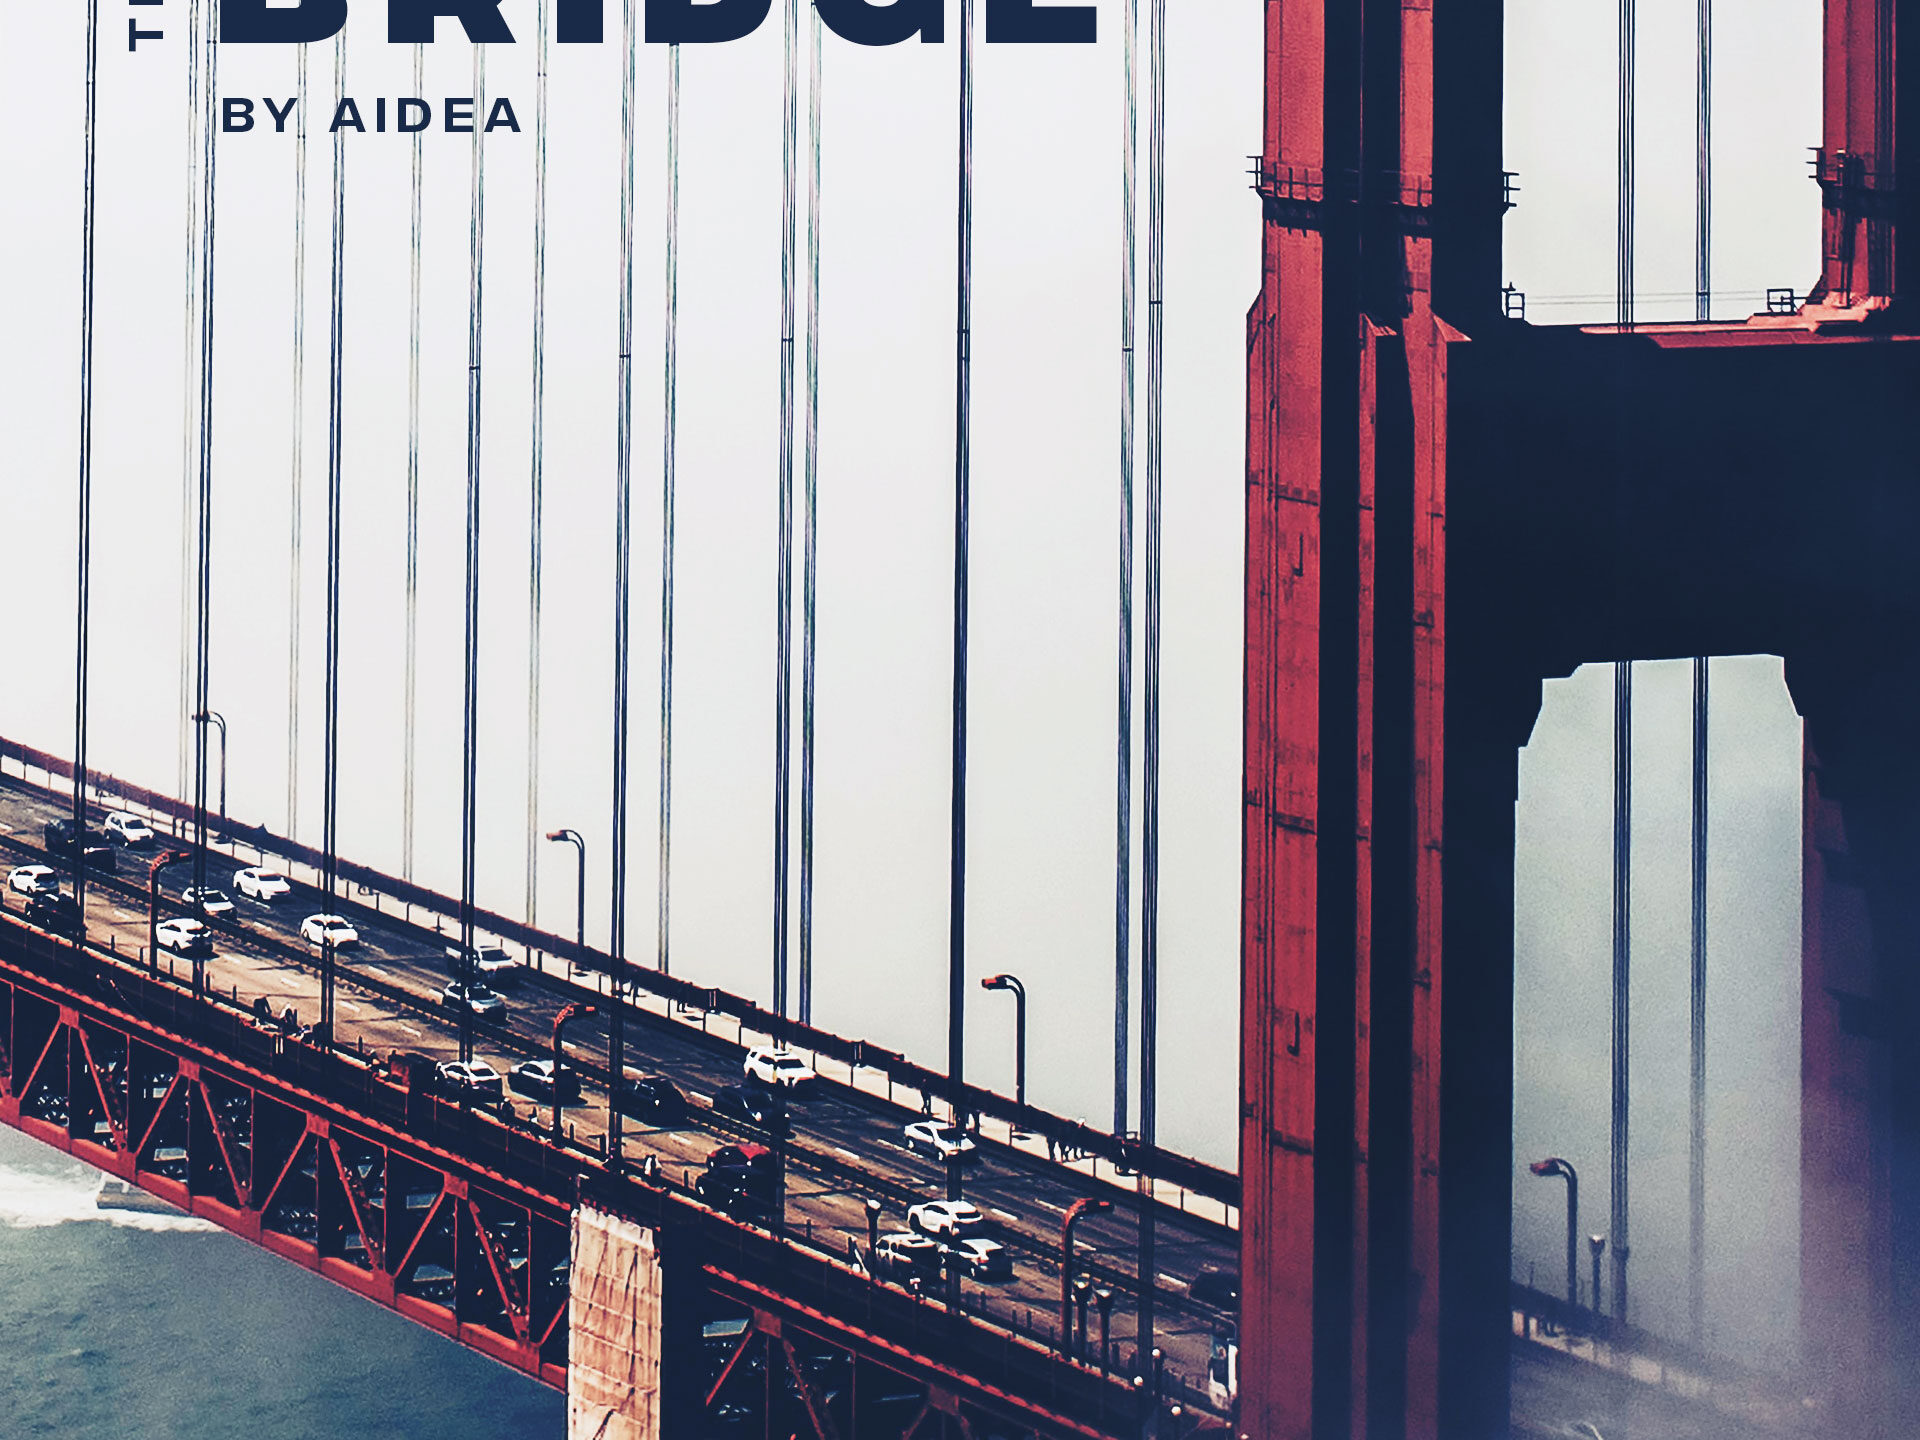 The Bridge Album